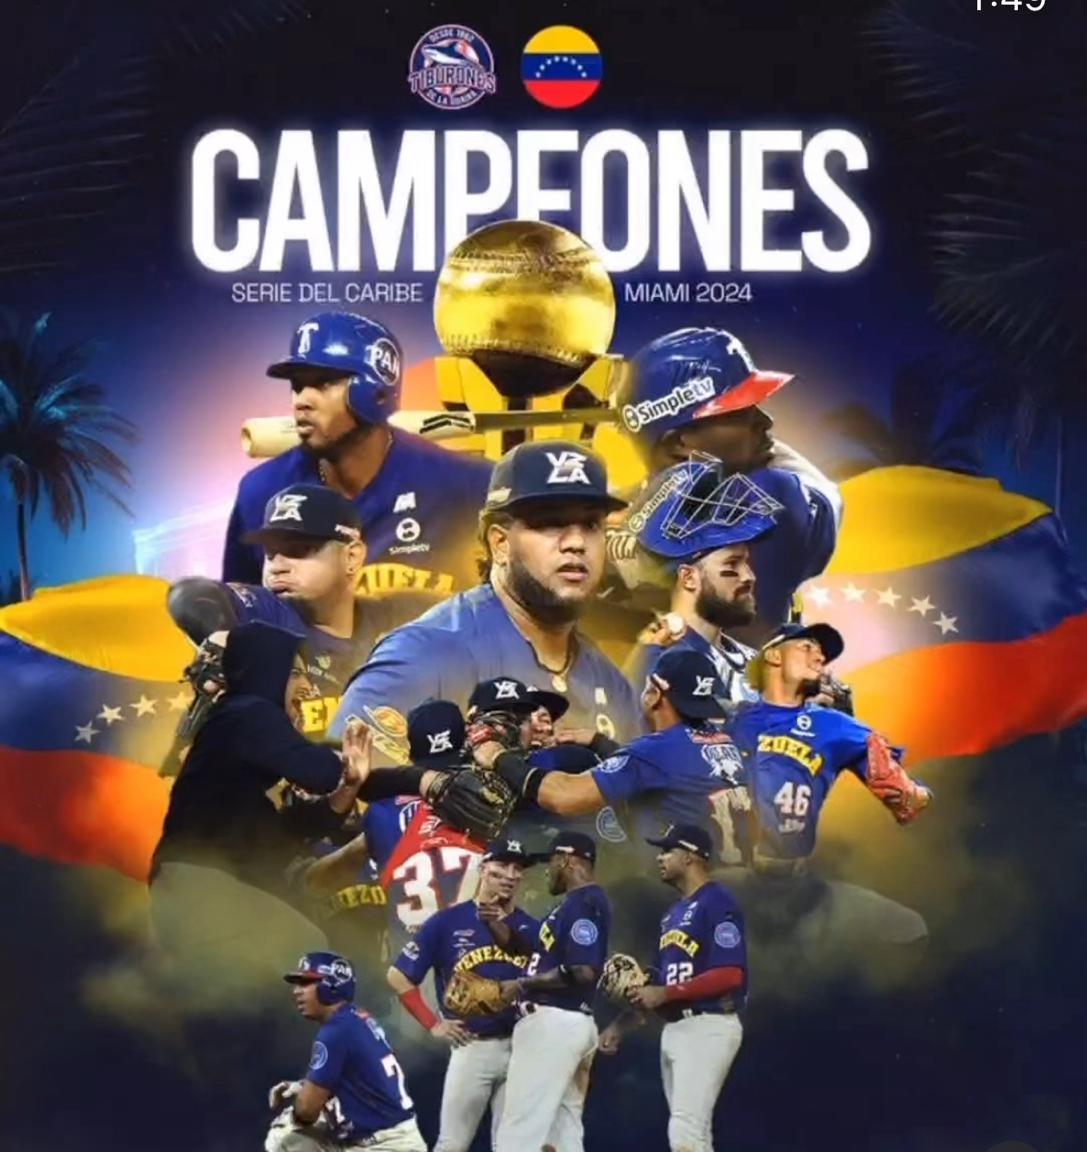 Venezuela triunfa en la Serie del Caribe Miami 2024